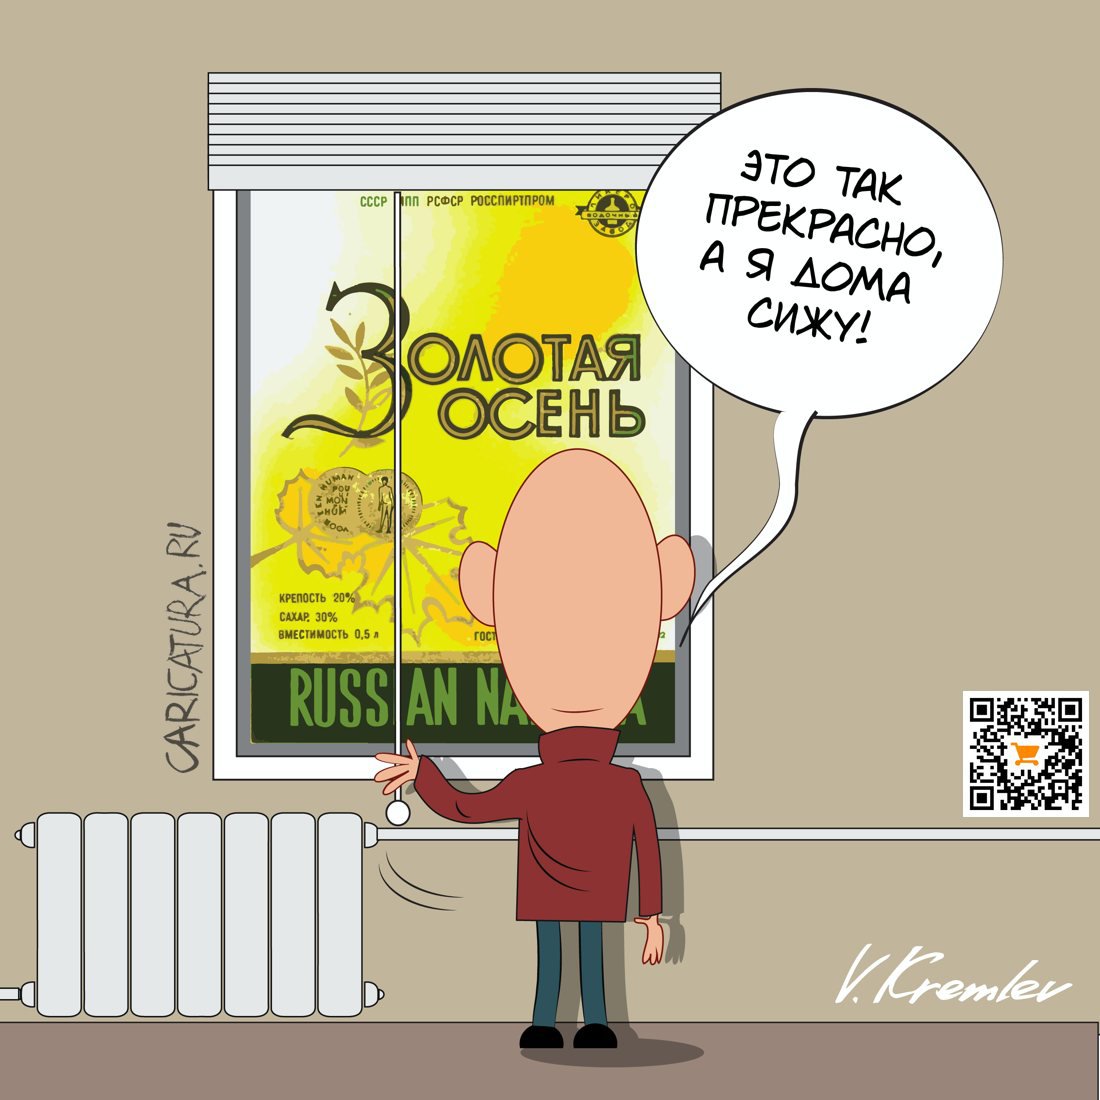 Карикатура "Золотая осень", Владимир Кремлёв